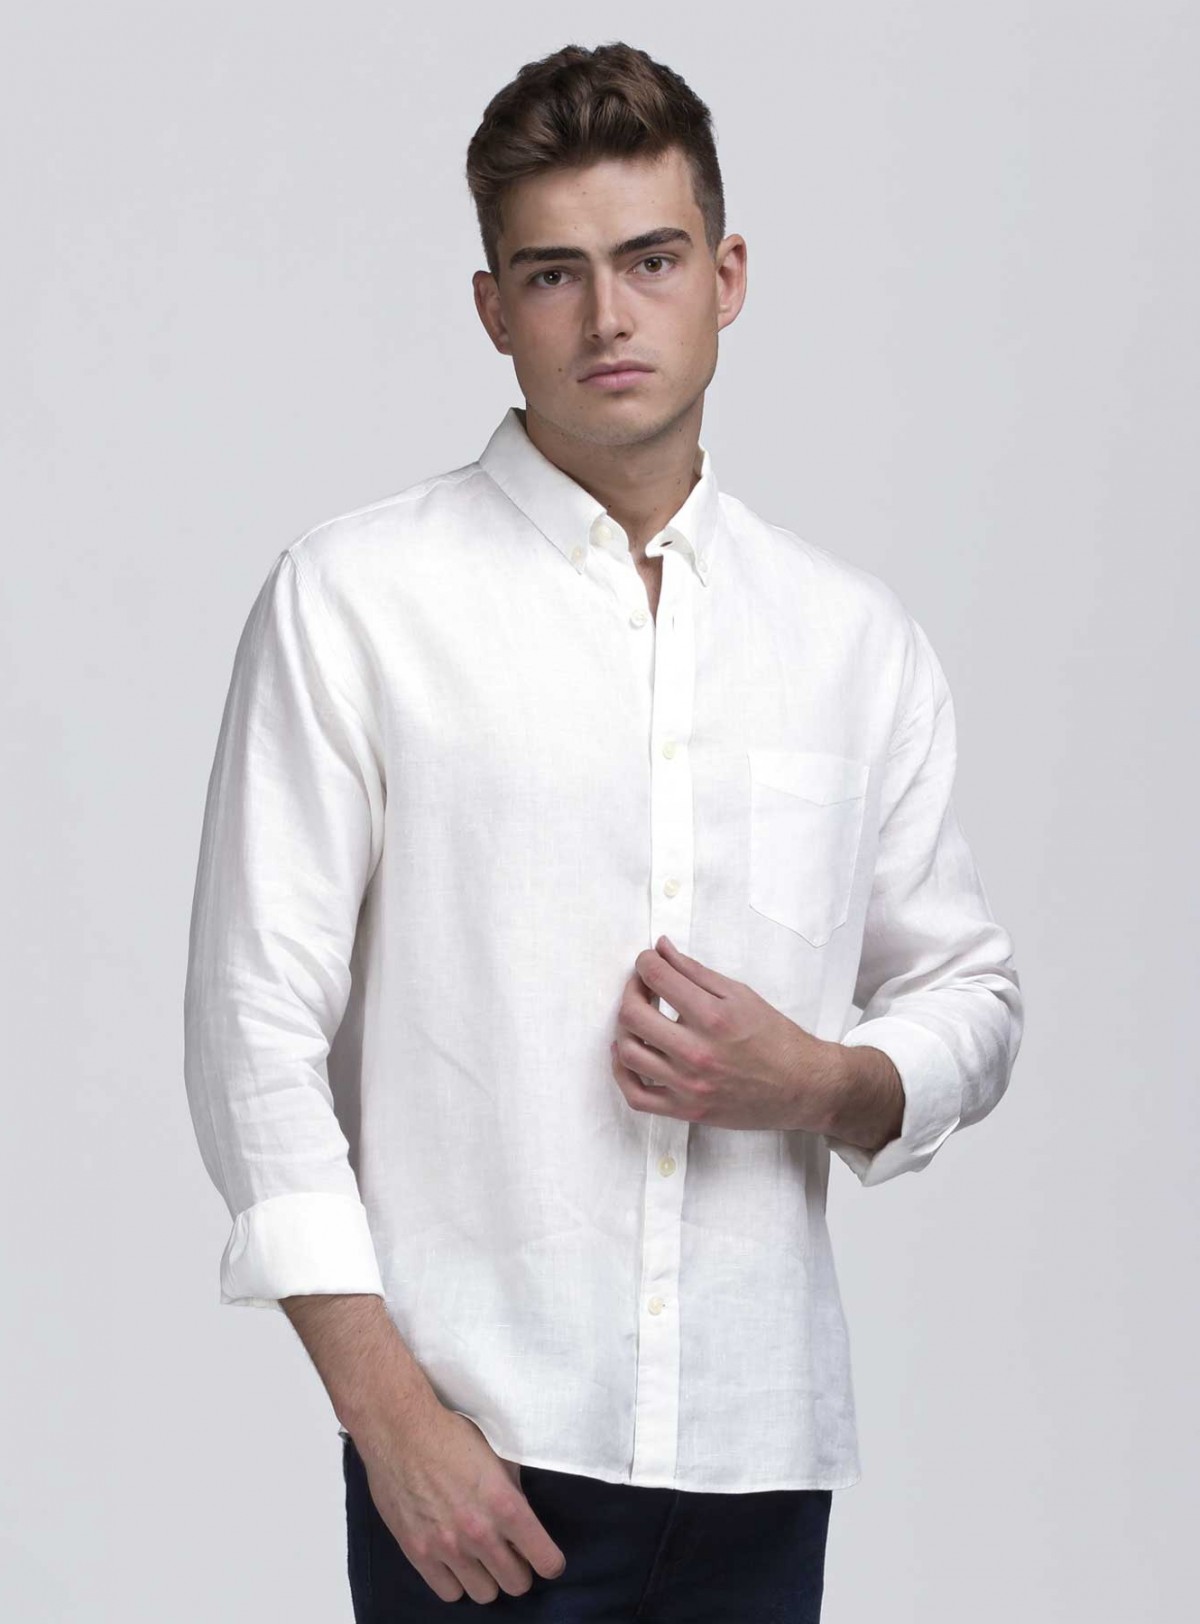 Buy Linen Shirt – Men in NZ | The Uniform Centre